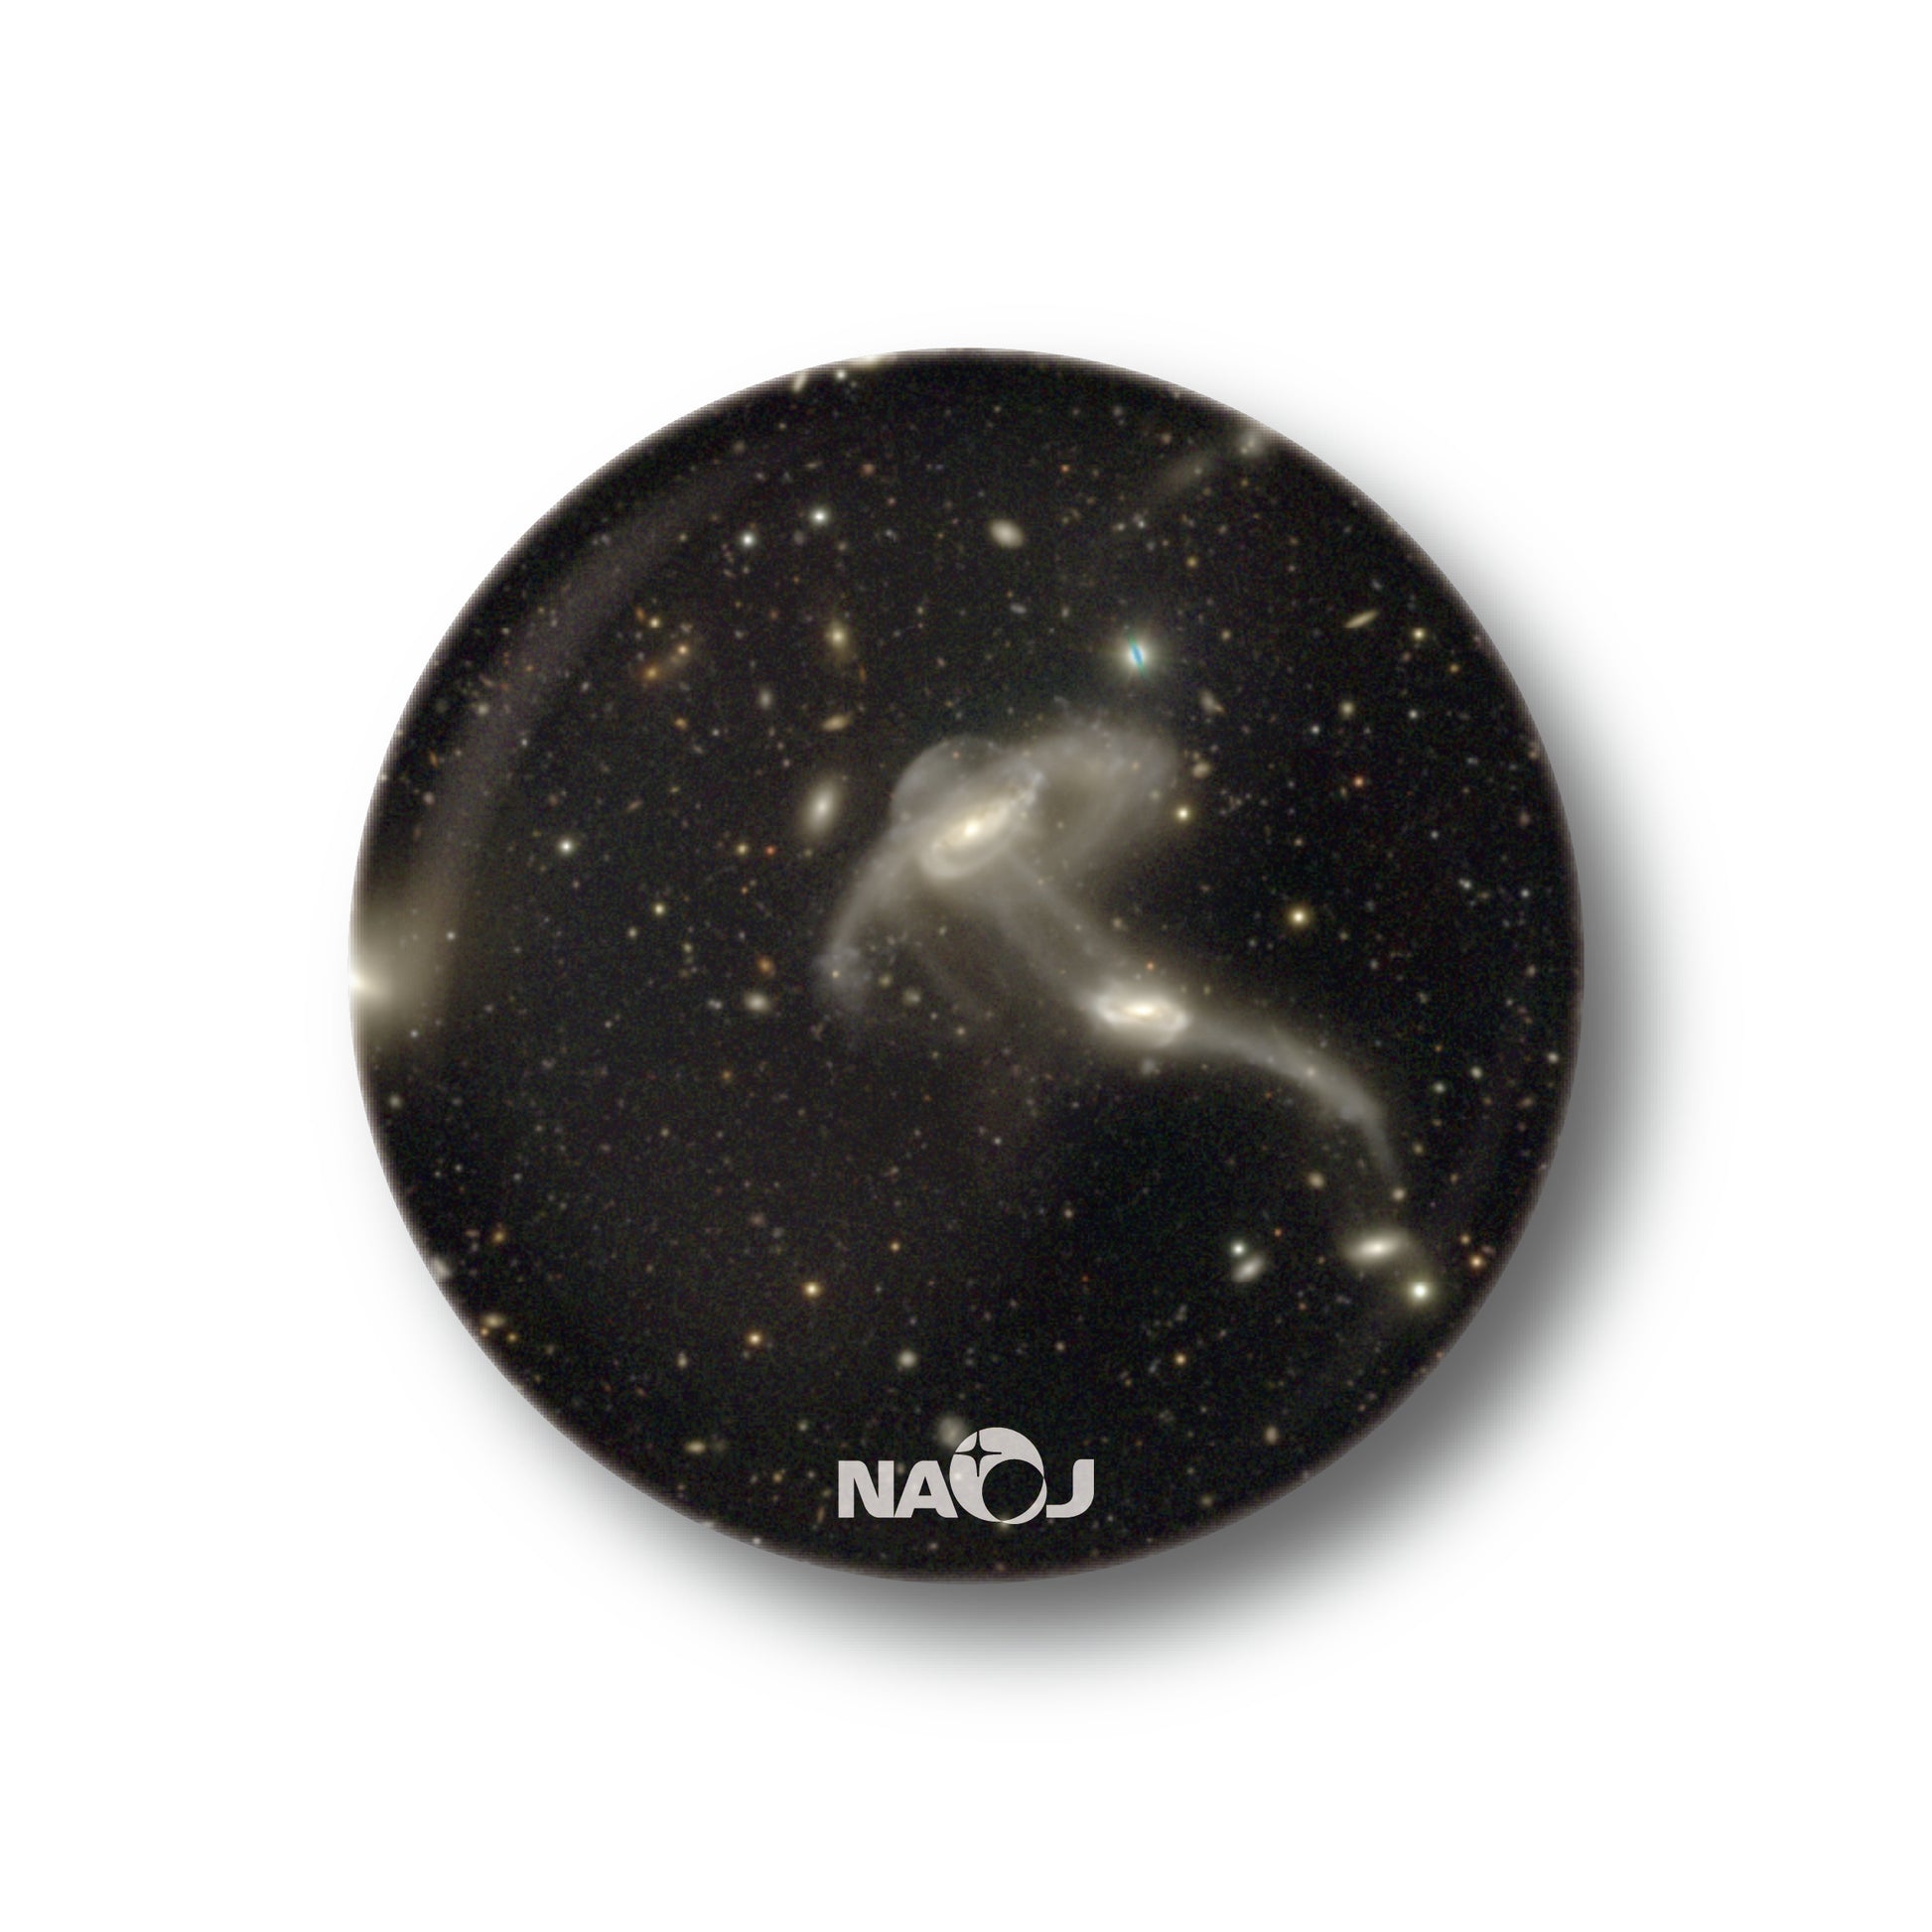 国立天文台  すばる望遠鏡HSCで見る宇宙  マグネット [小] 衝突銀河 UGC9327&FIRST 01